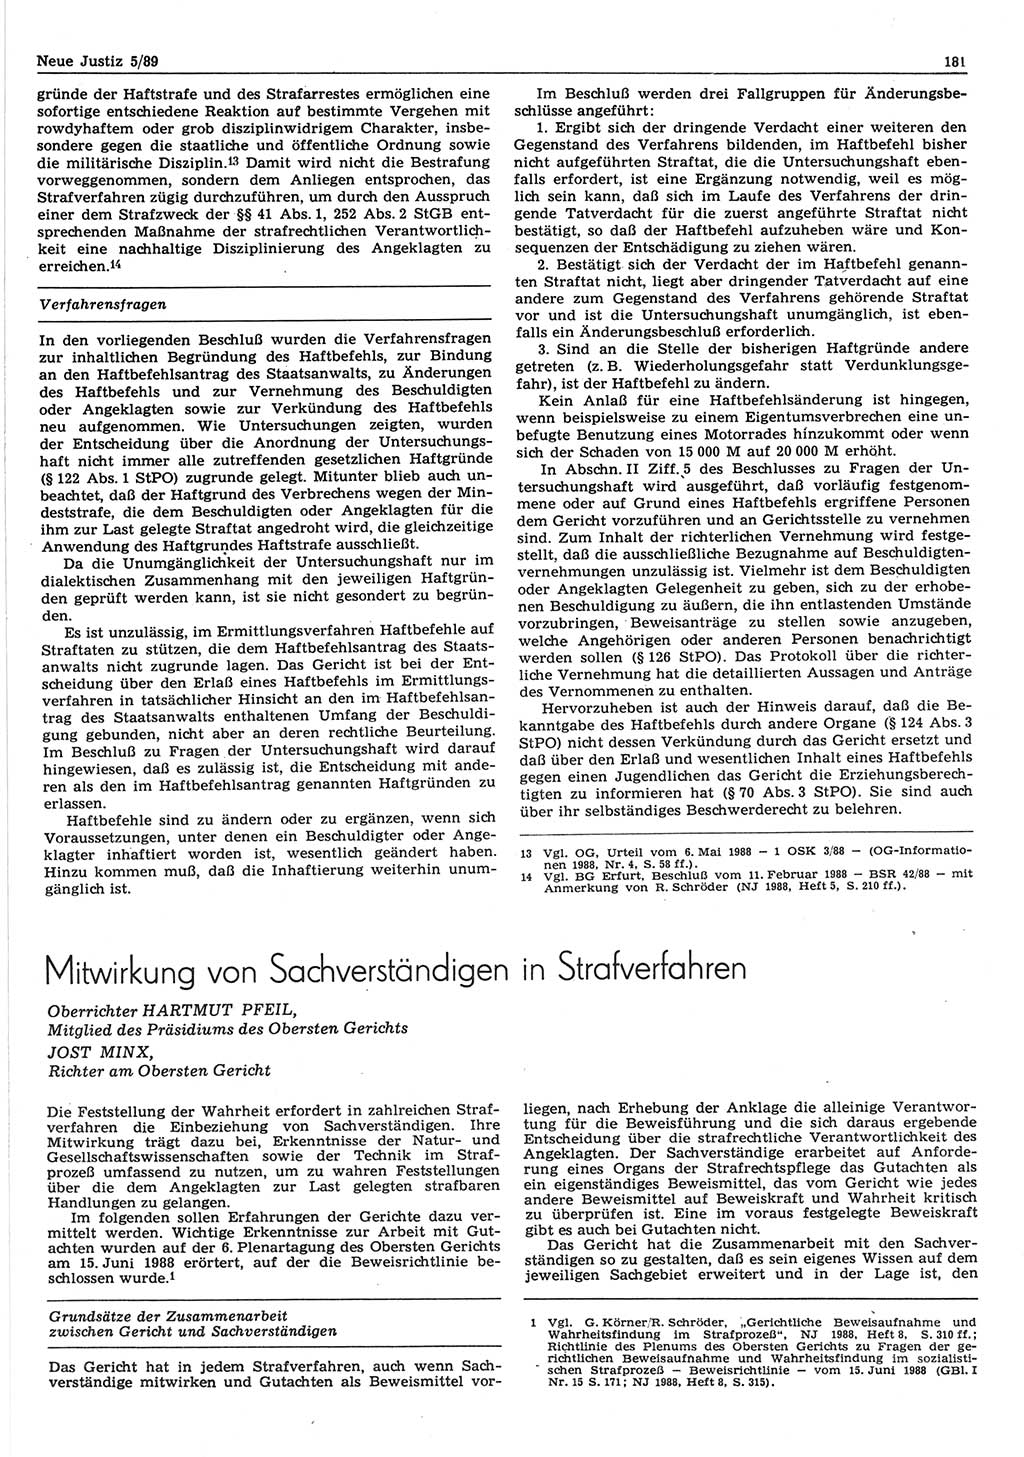 Neue Justiz (NJ), Zeitschrift für sozialistisches Recht und Gesetzlichkeit [Deutsche Demokratische Republik (DDR)], 43. Jahrgang 1989, Seite 181 (NJ DDR 1989, S. 181)